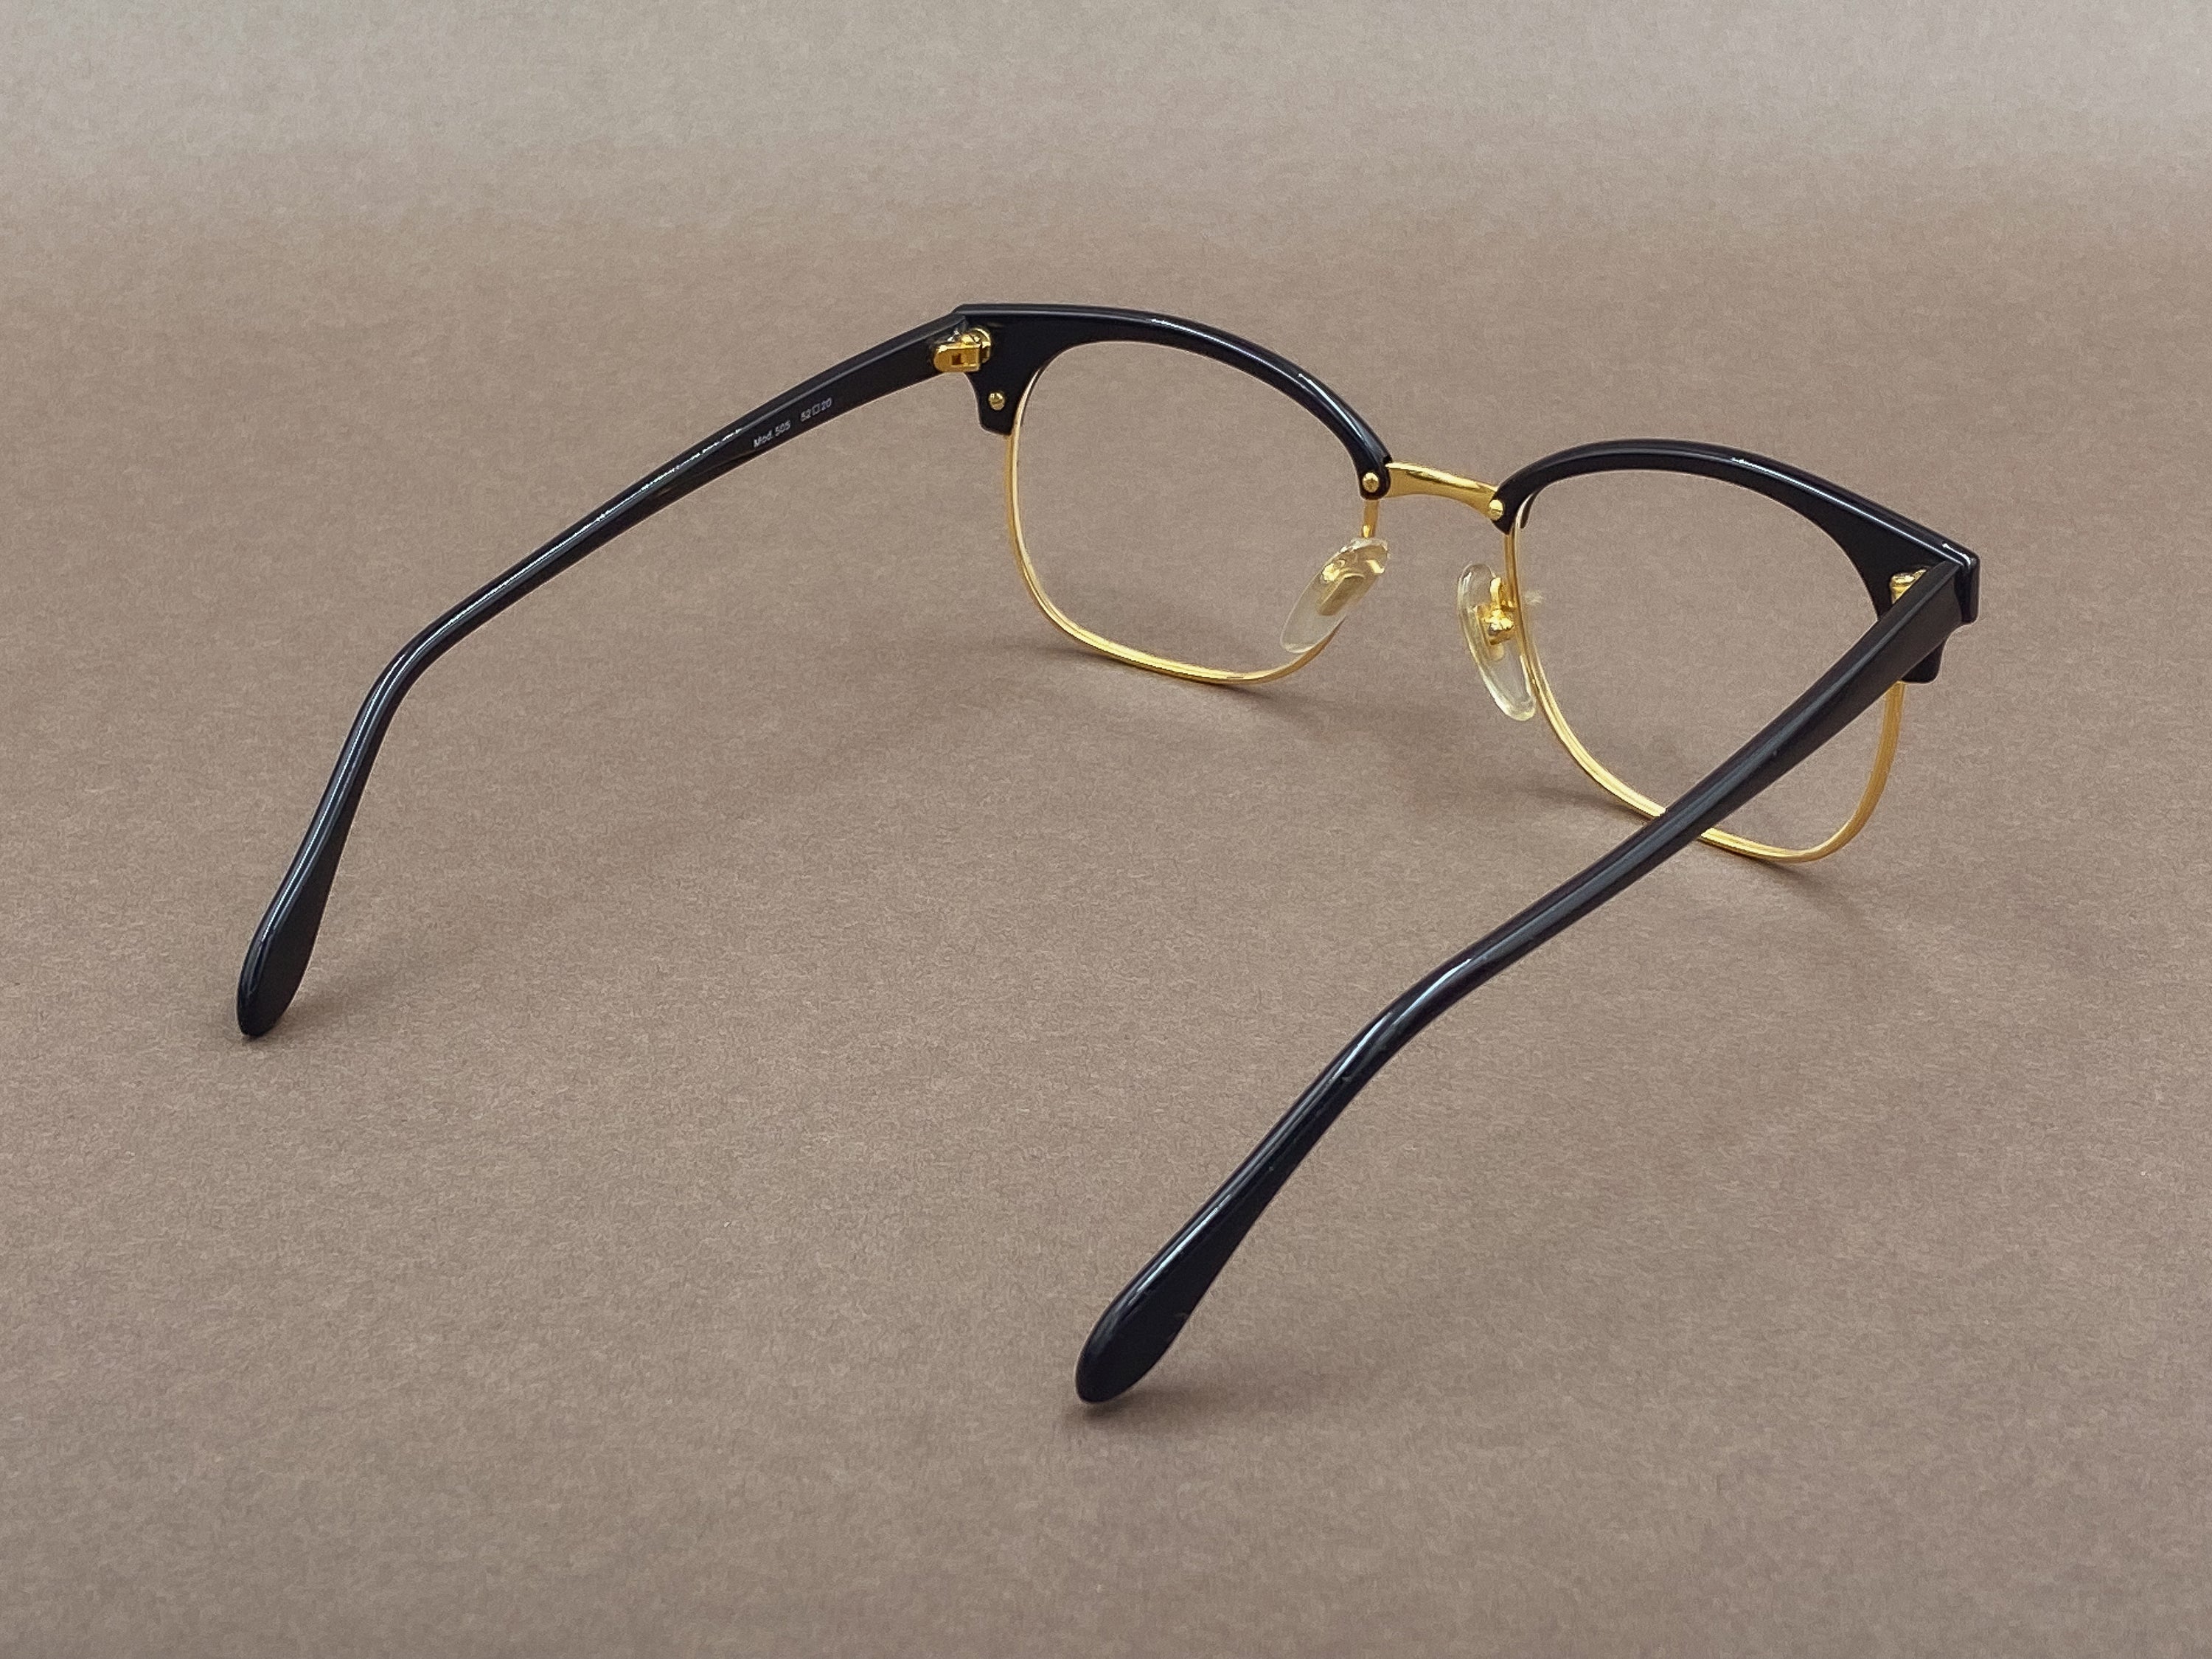 Bartoli 505 eyeglasses